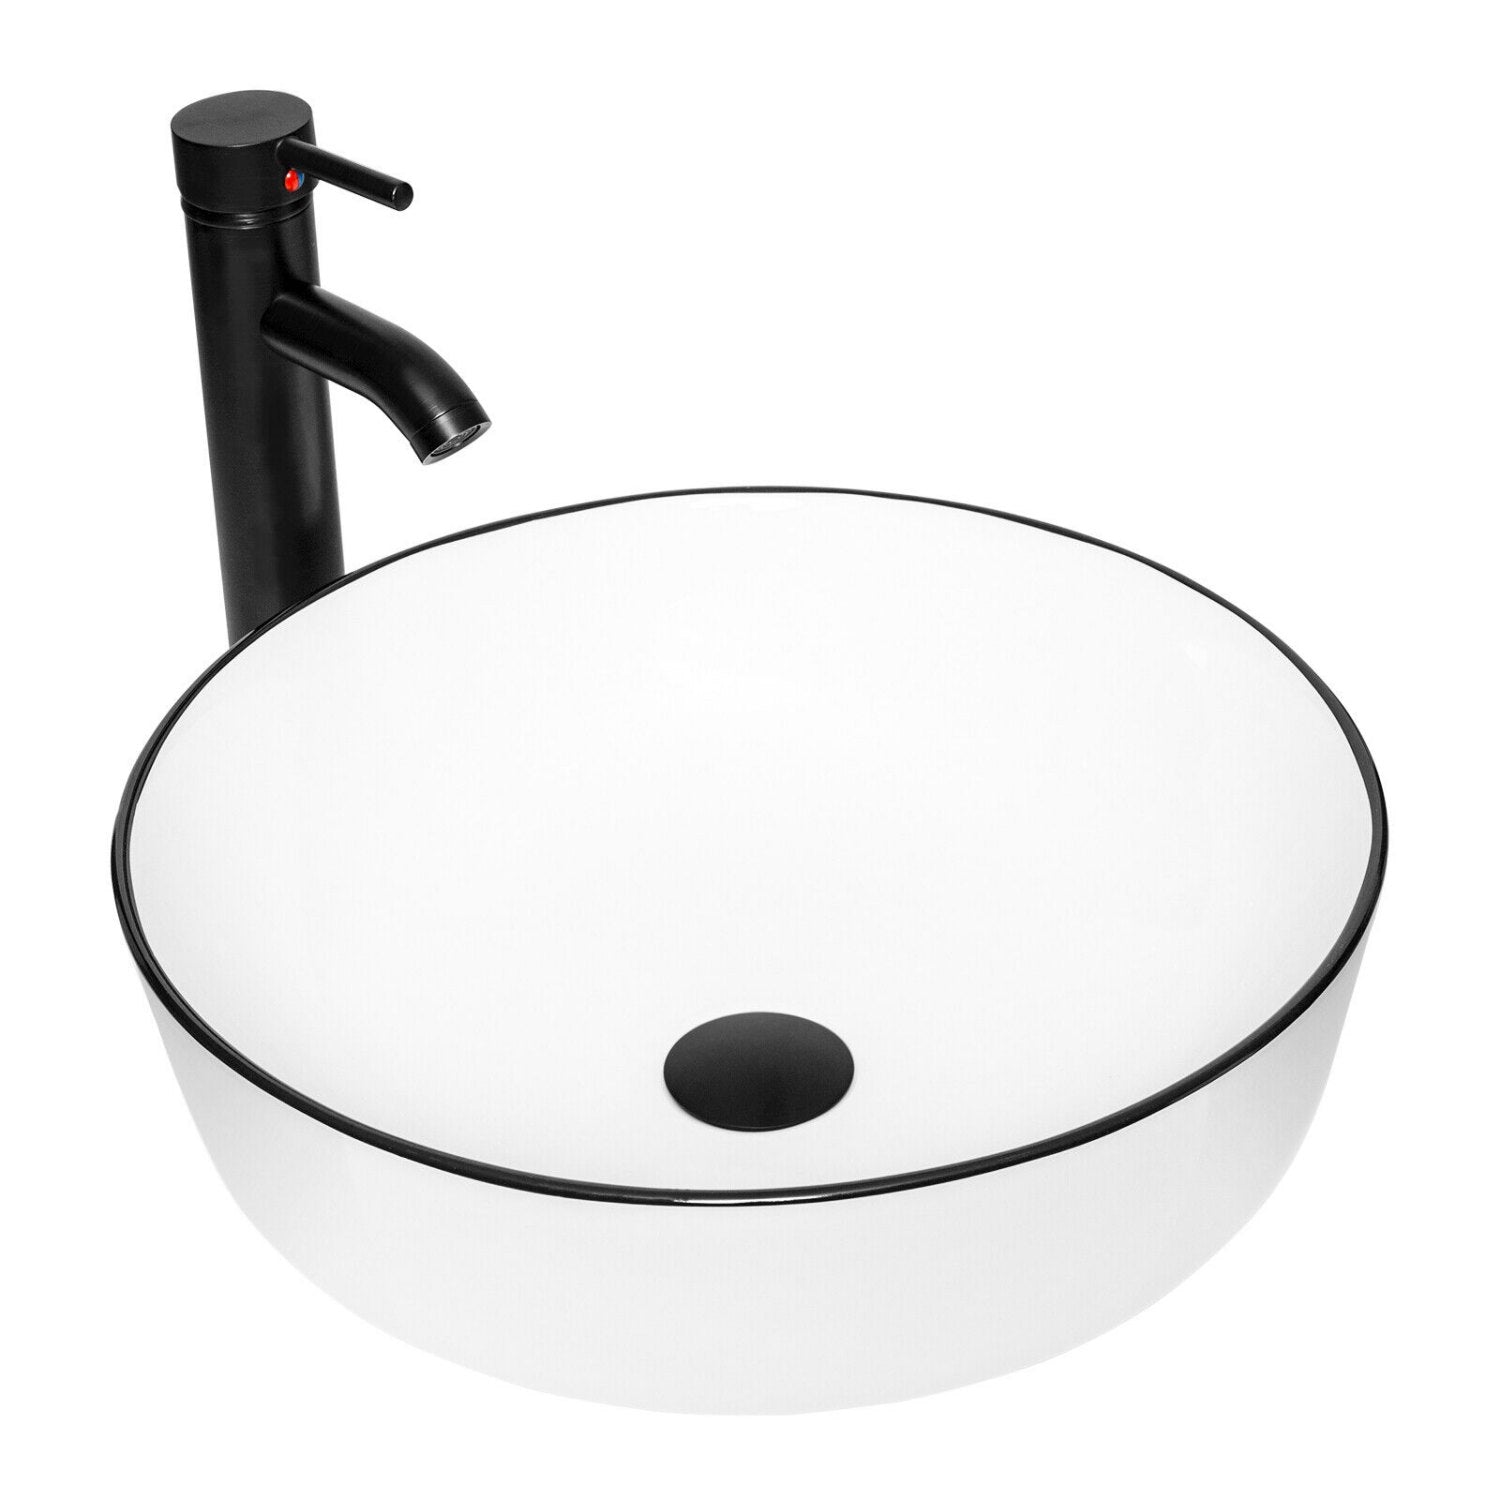 Elecwish White Round Sink